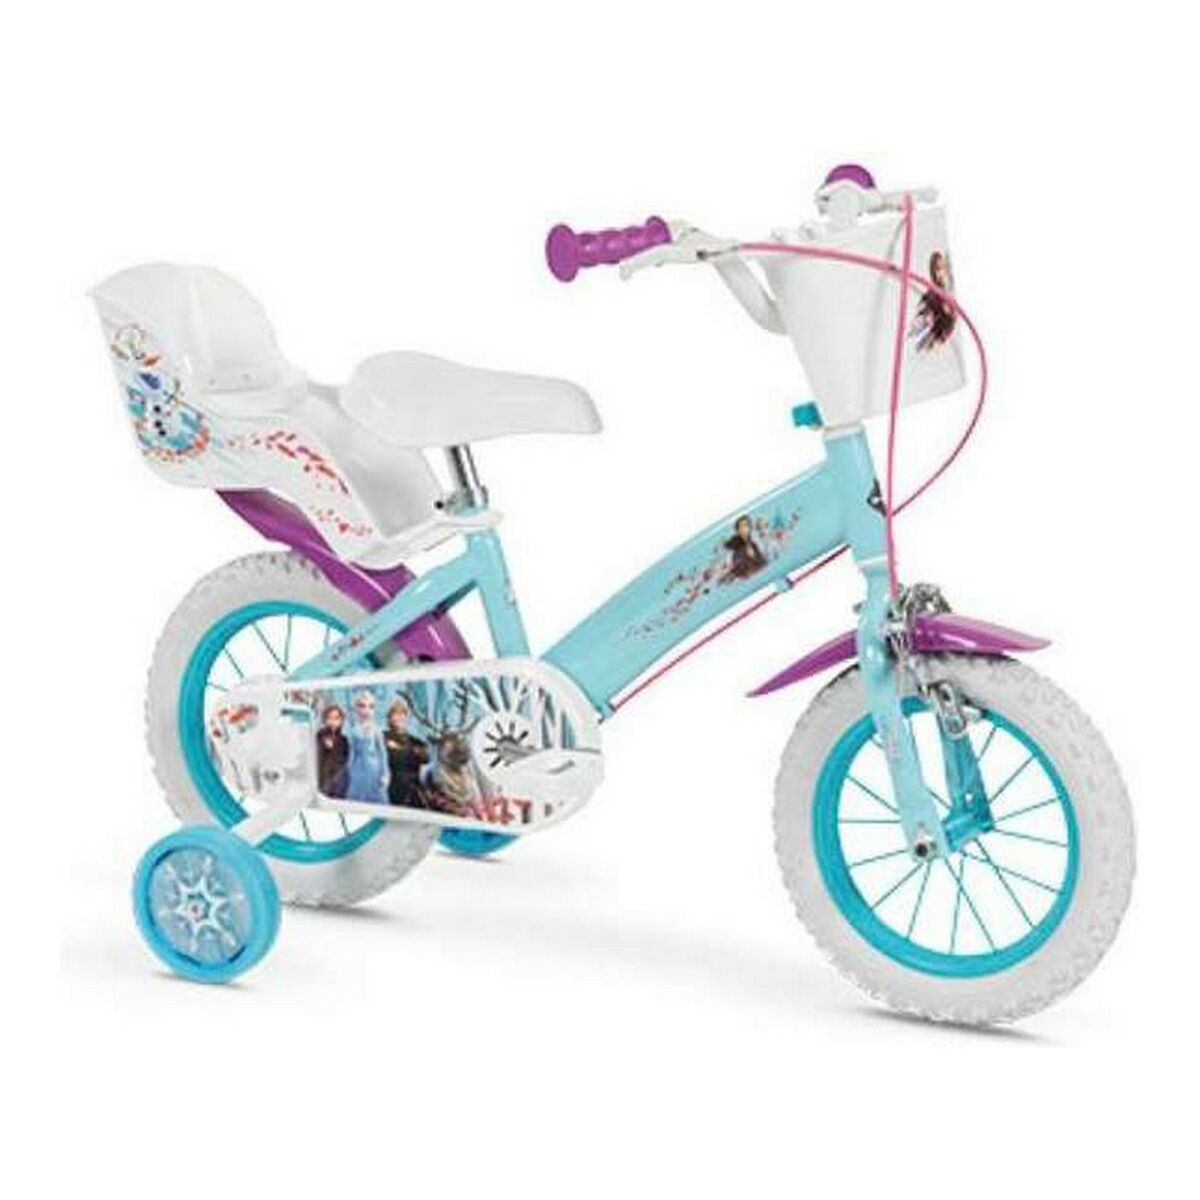 Huffy Kinder-Fahrrad Frozen